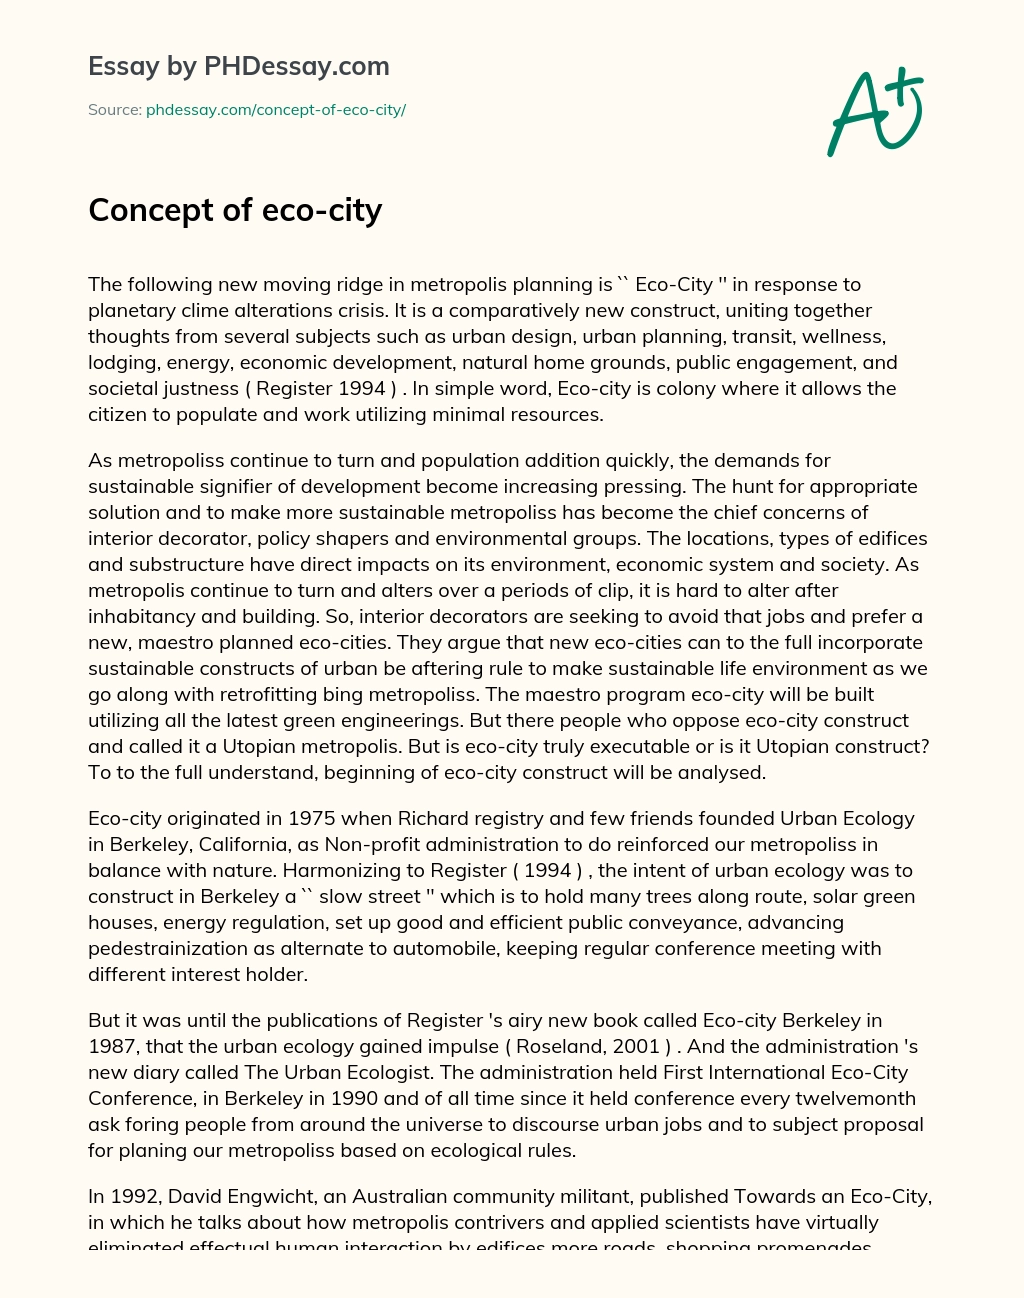 Concept of eco-city essay